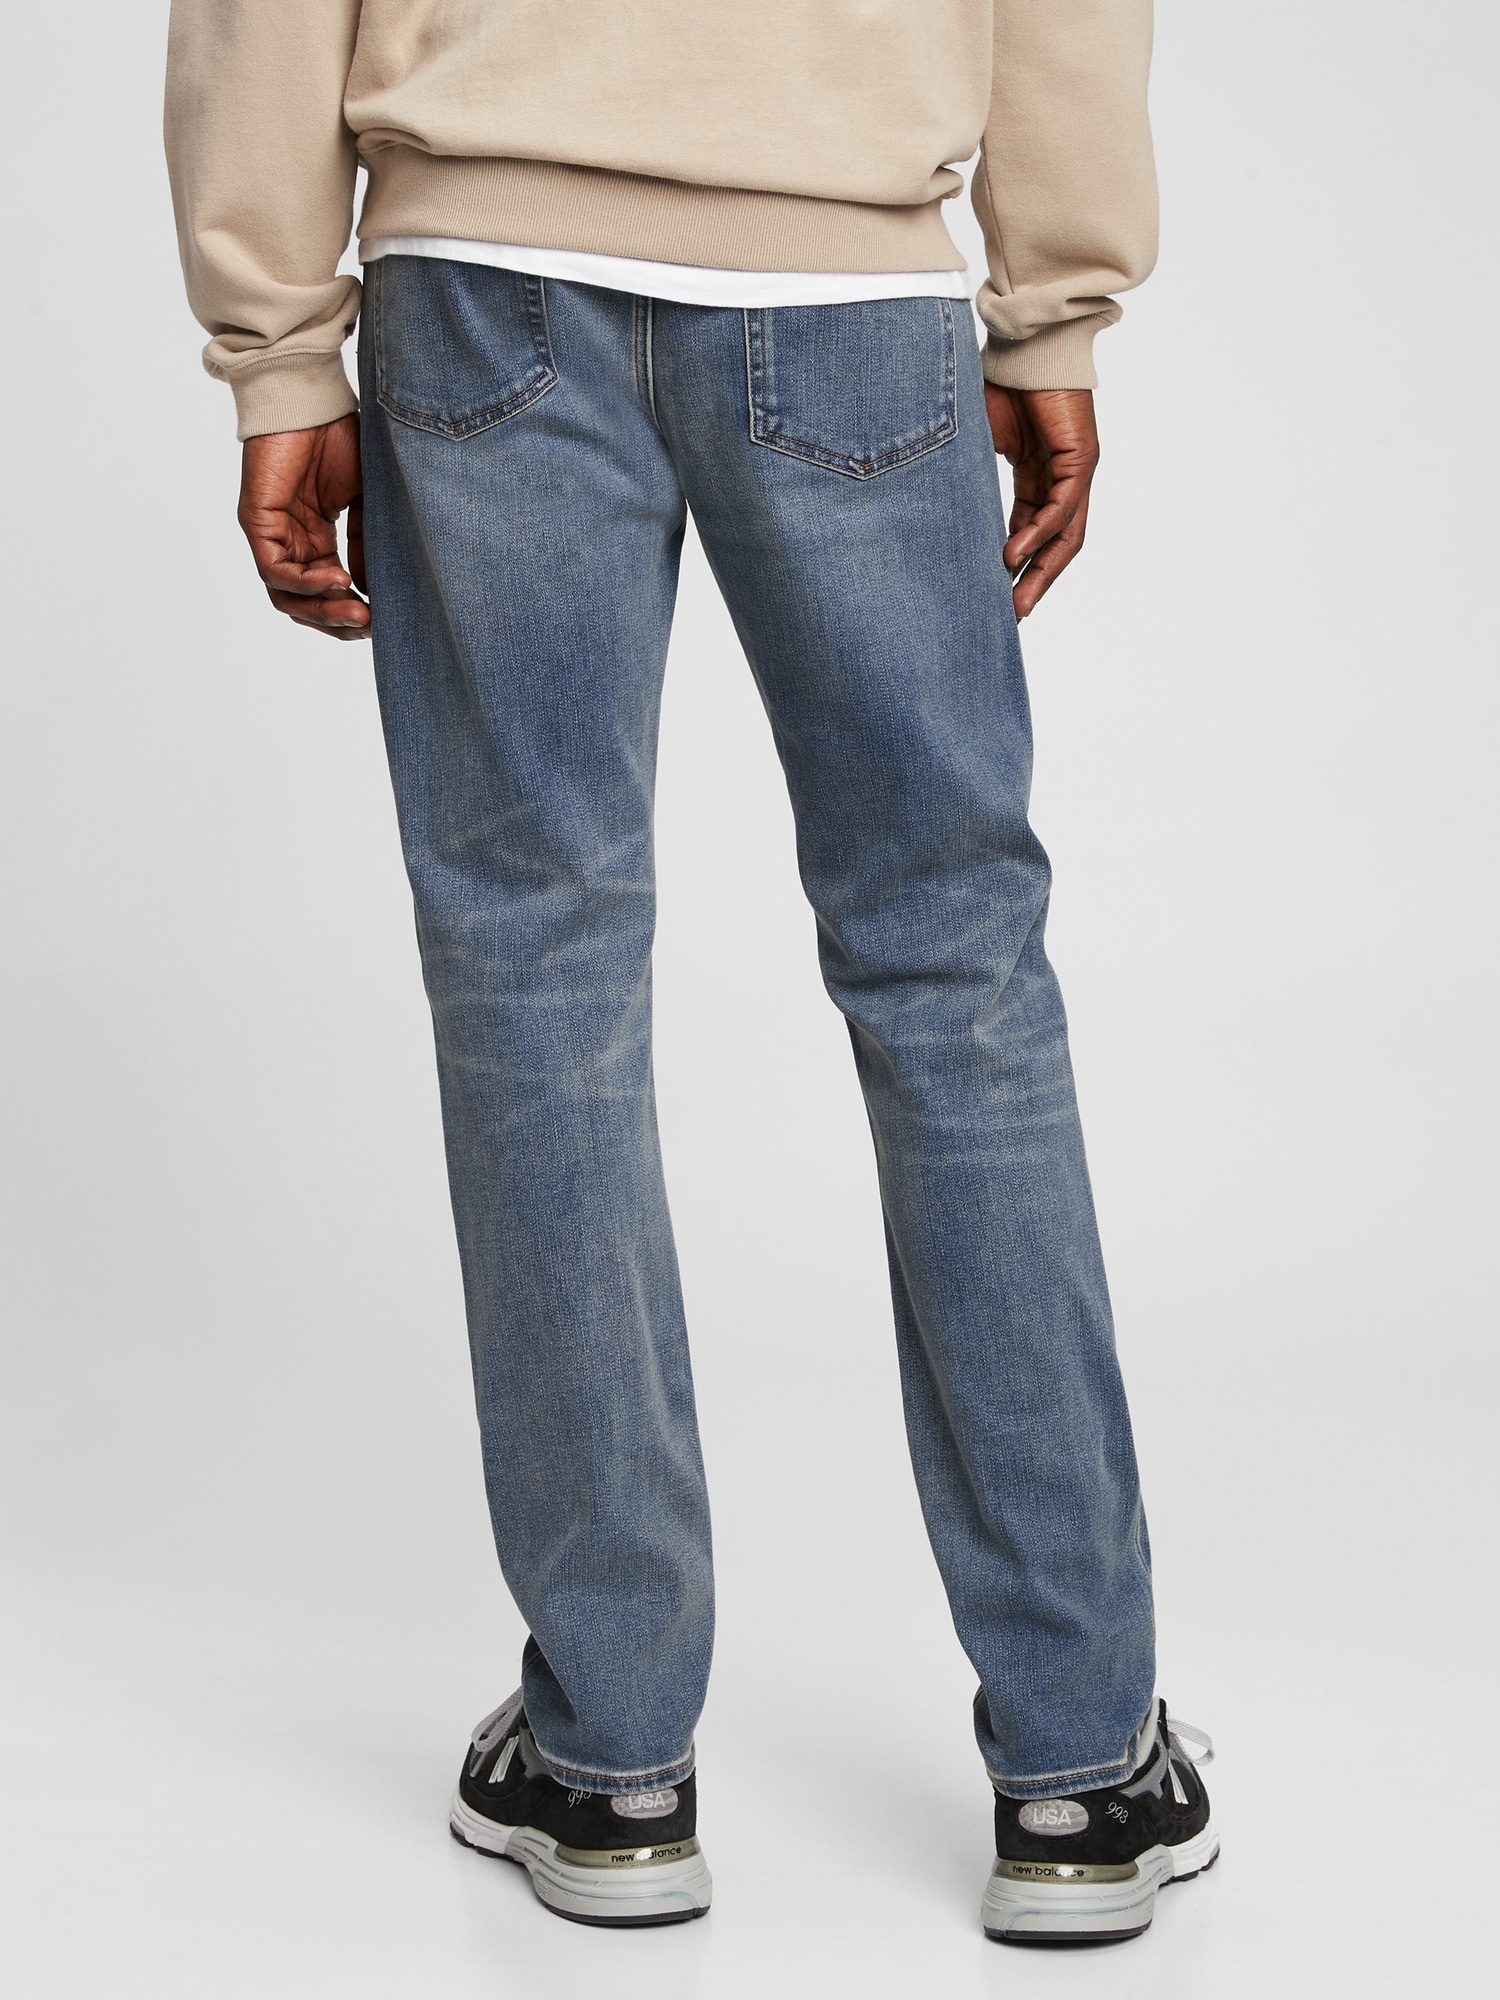 GAP Mens Soft Wear Slim Fit Jeans, Light Wash, 34W x 34L US at